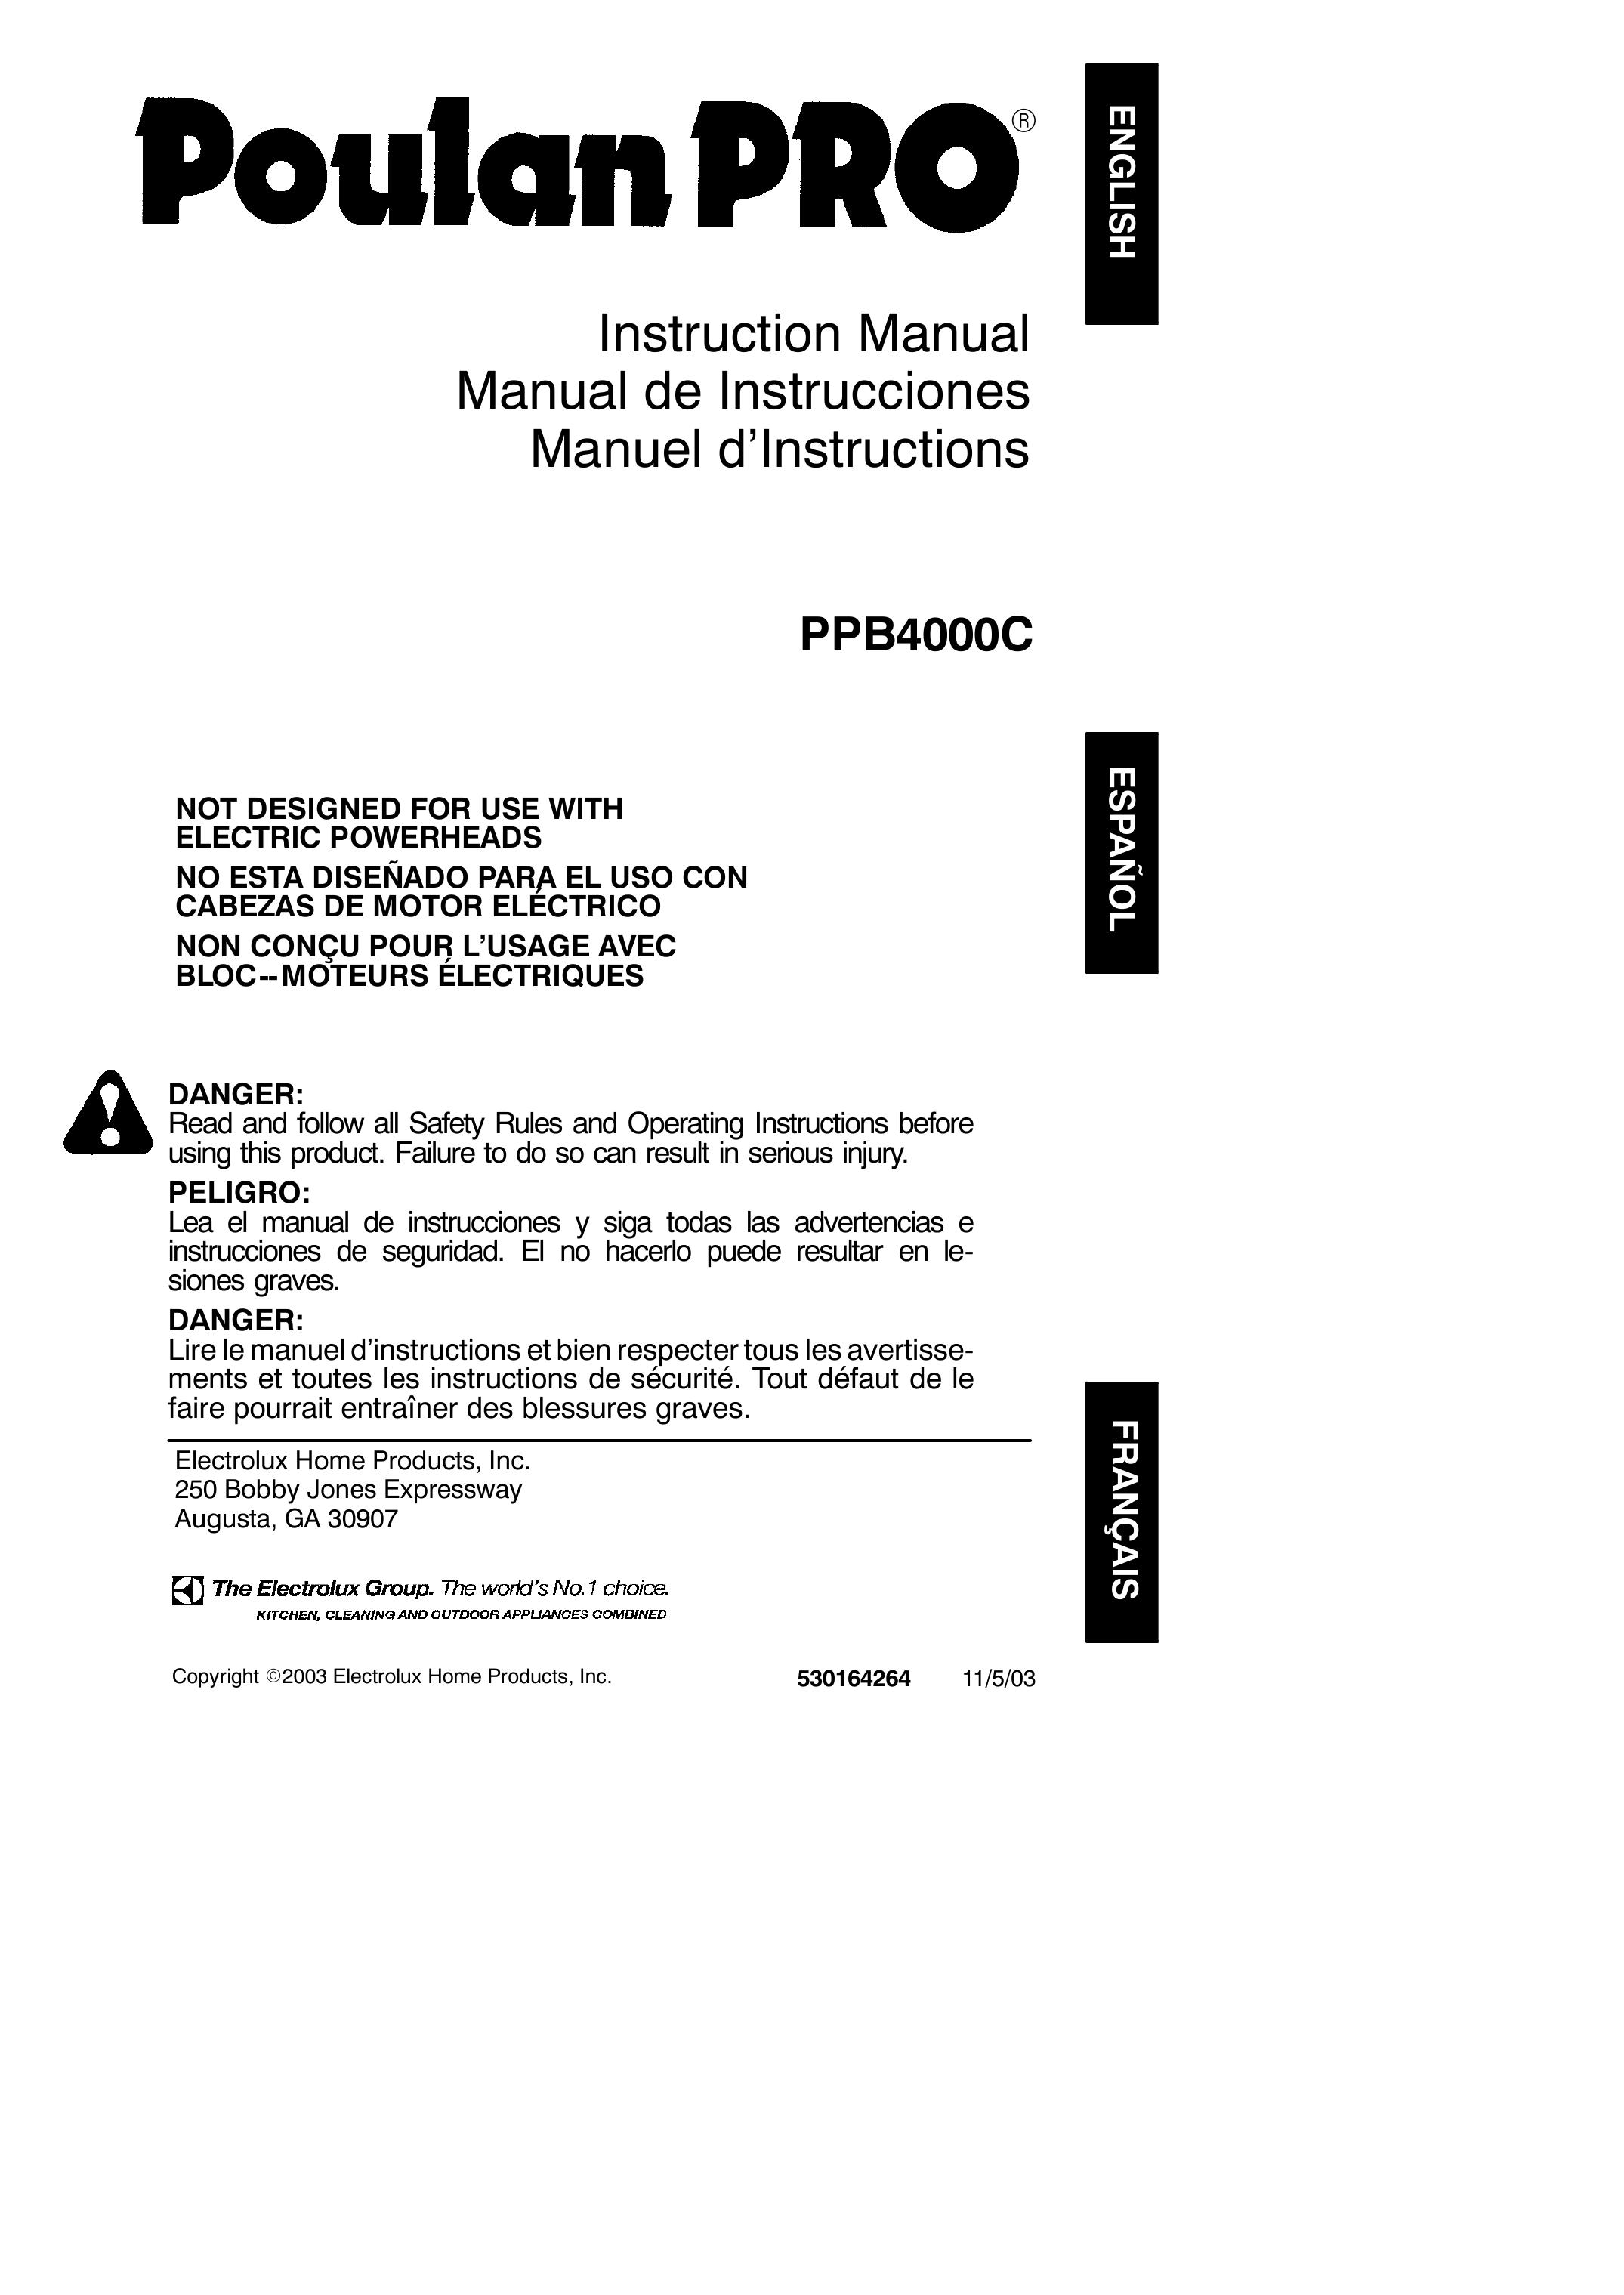 Poulan PPB4000C Brush Cutter User Manual